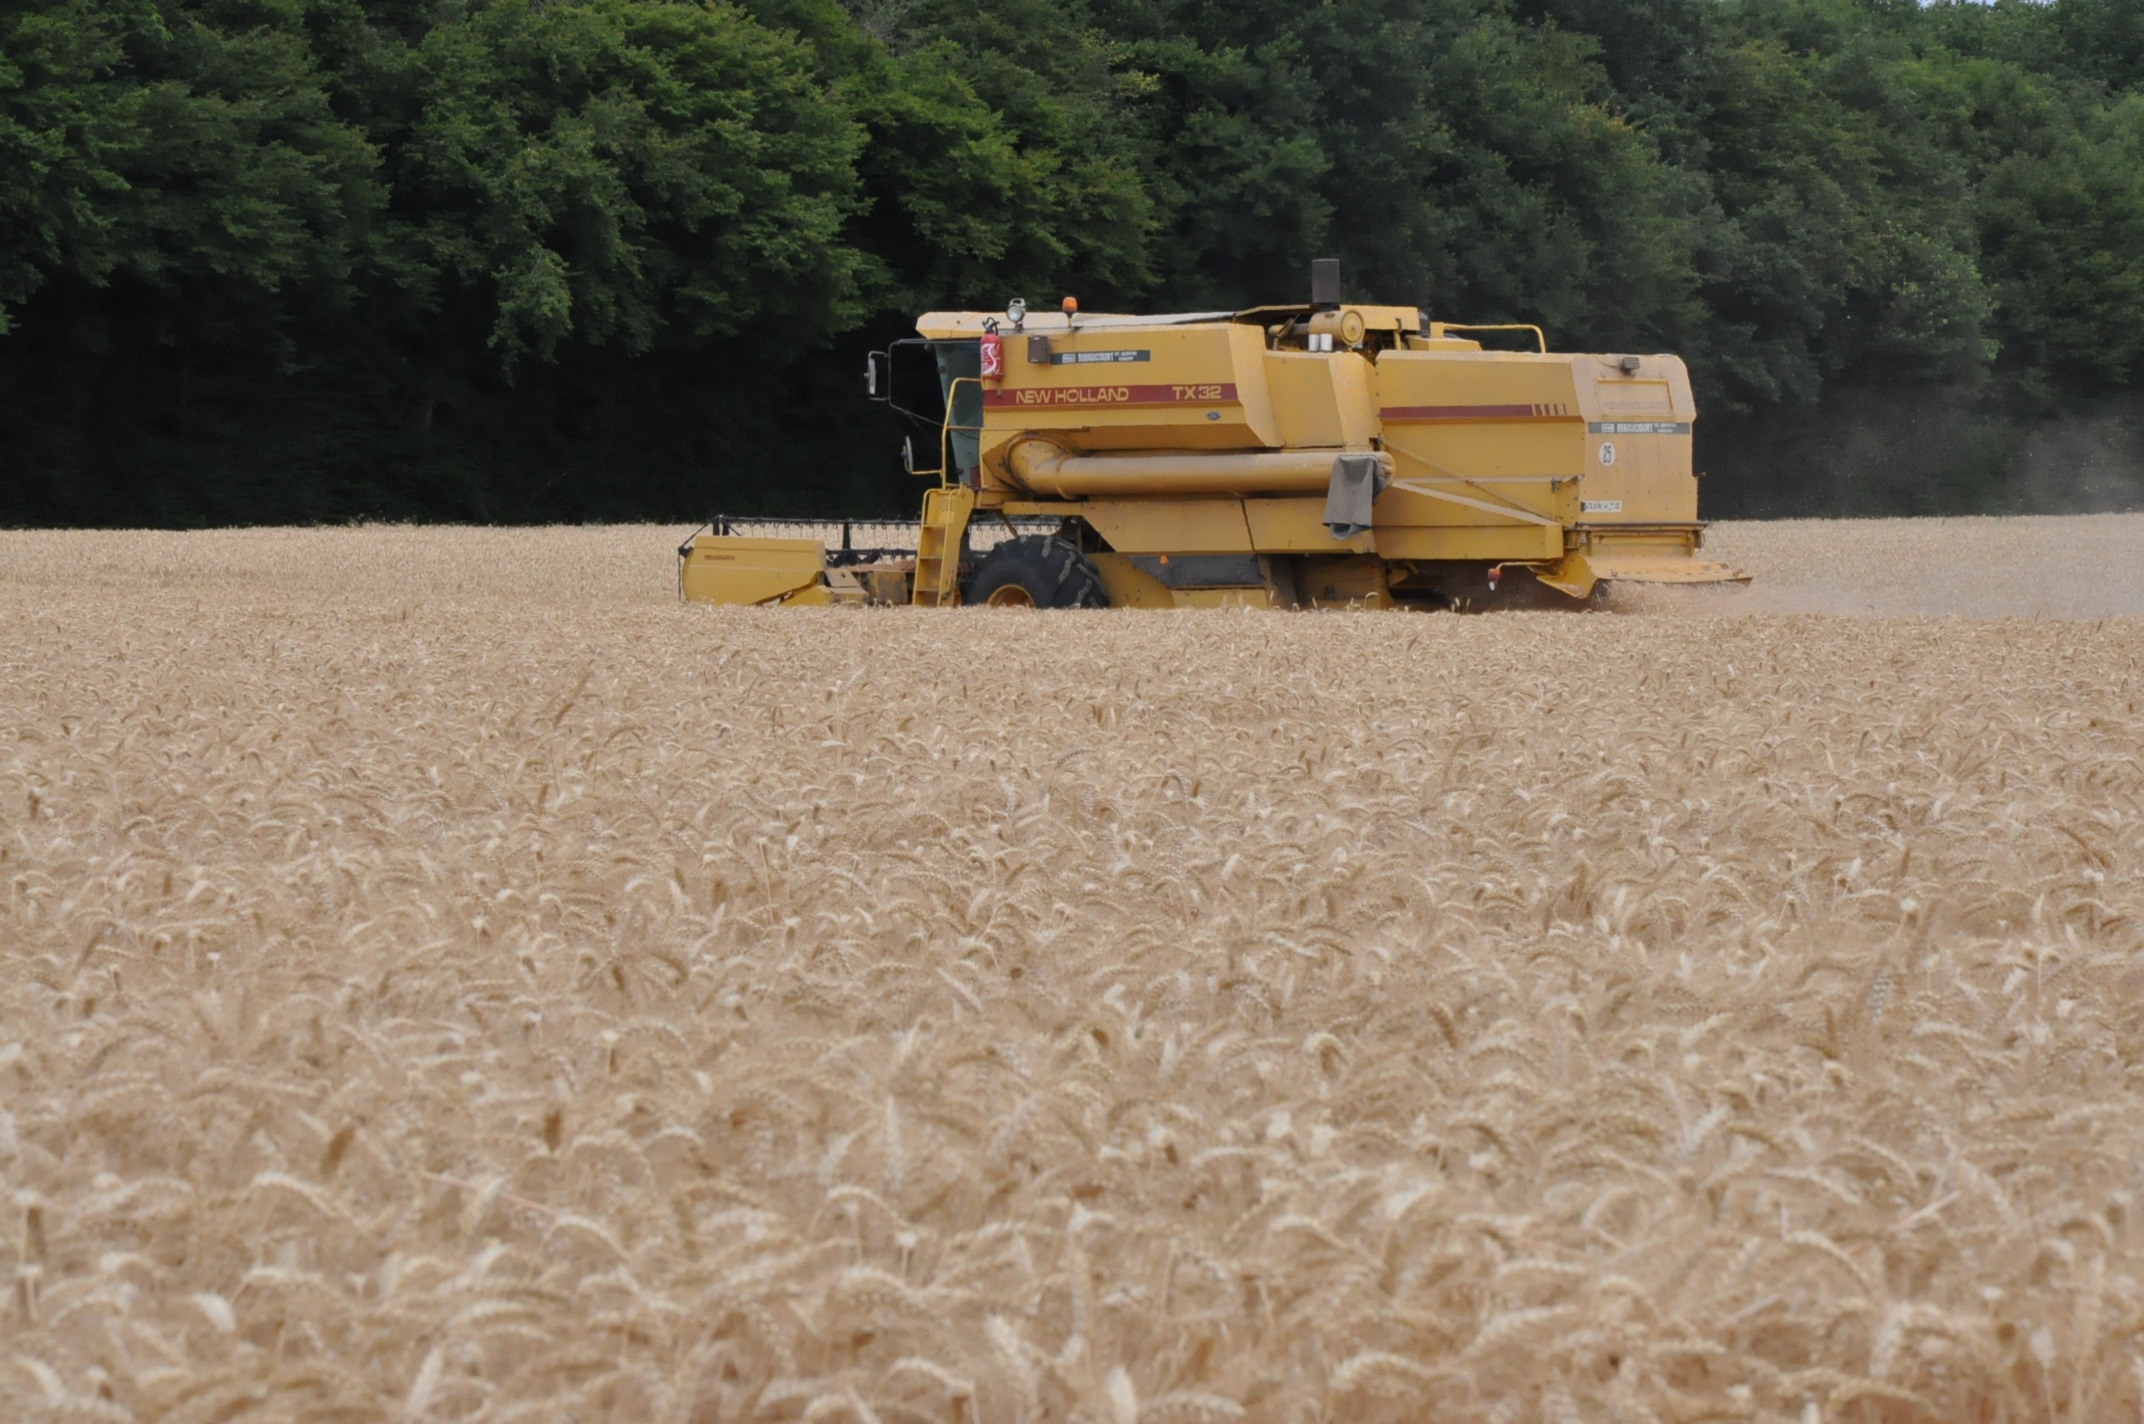 Feux de récoltes : le préfet de l'Eure impose des obligations aux cultivateurs